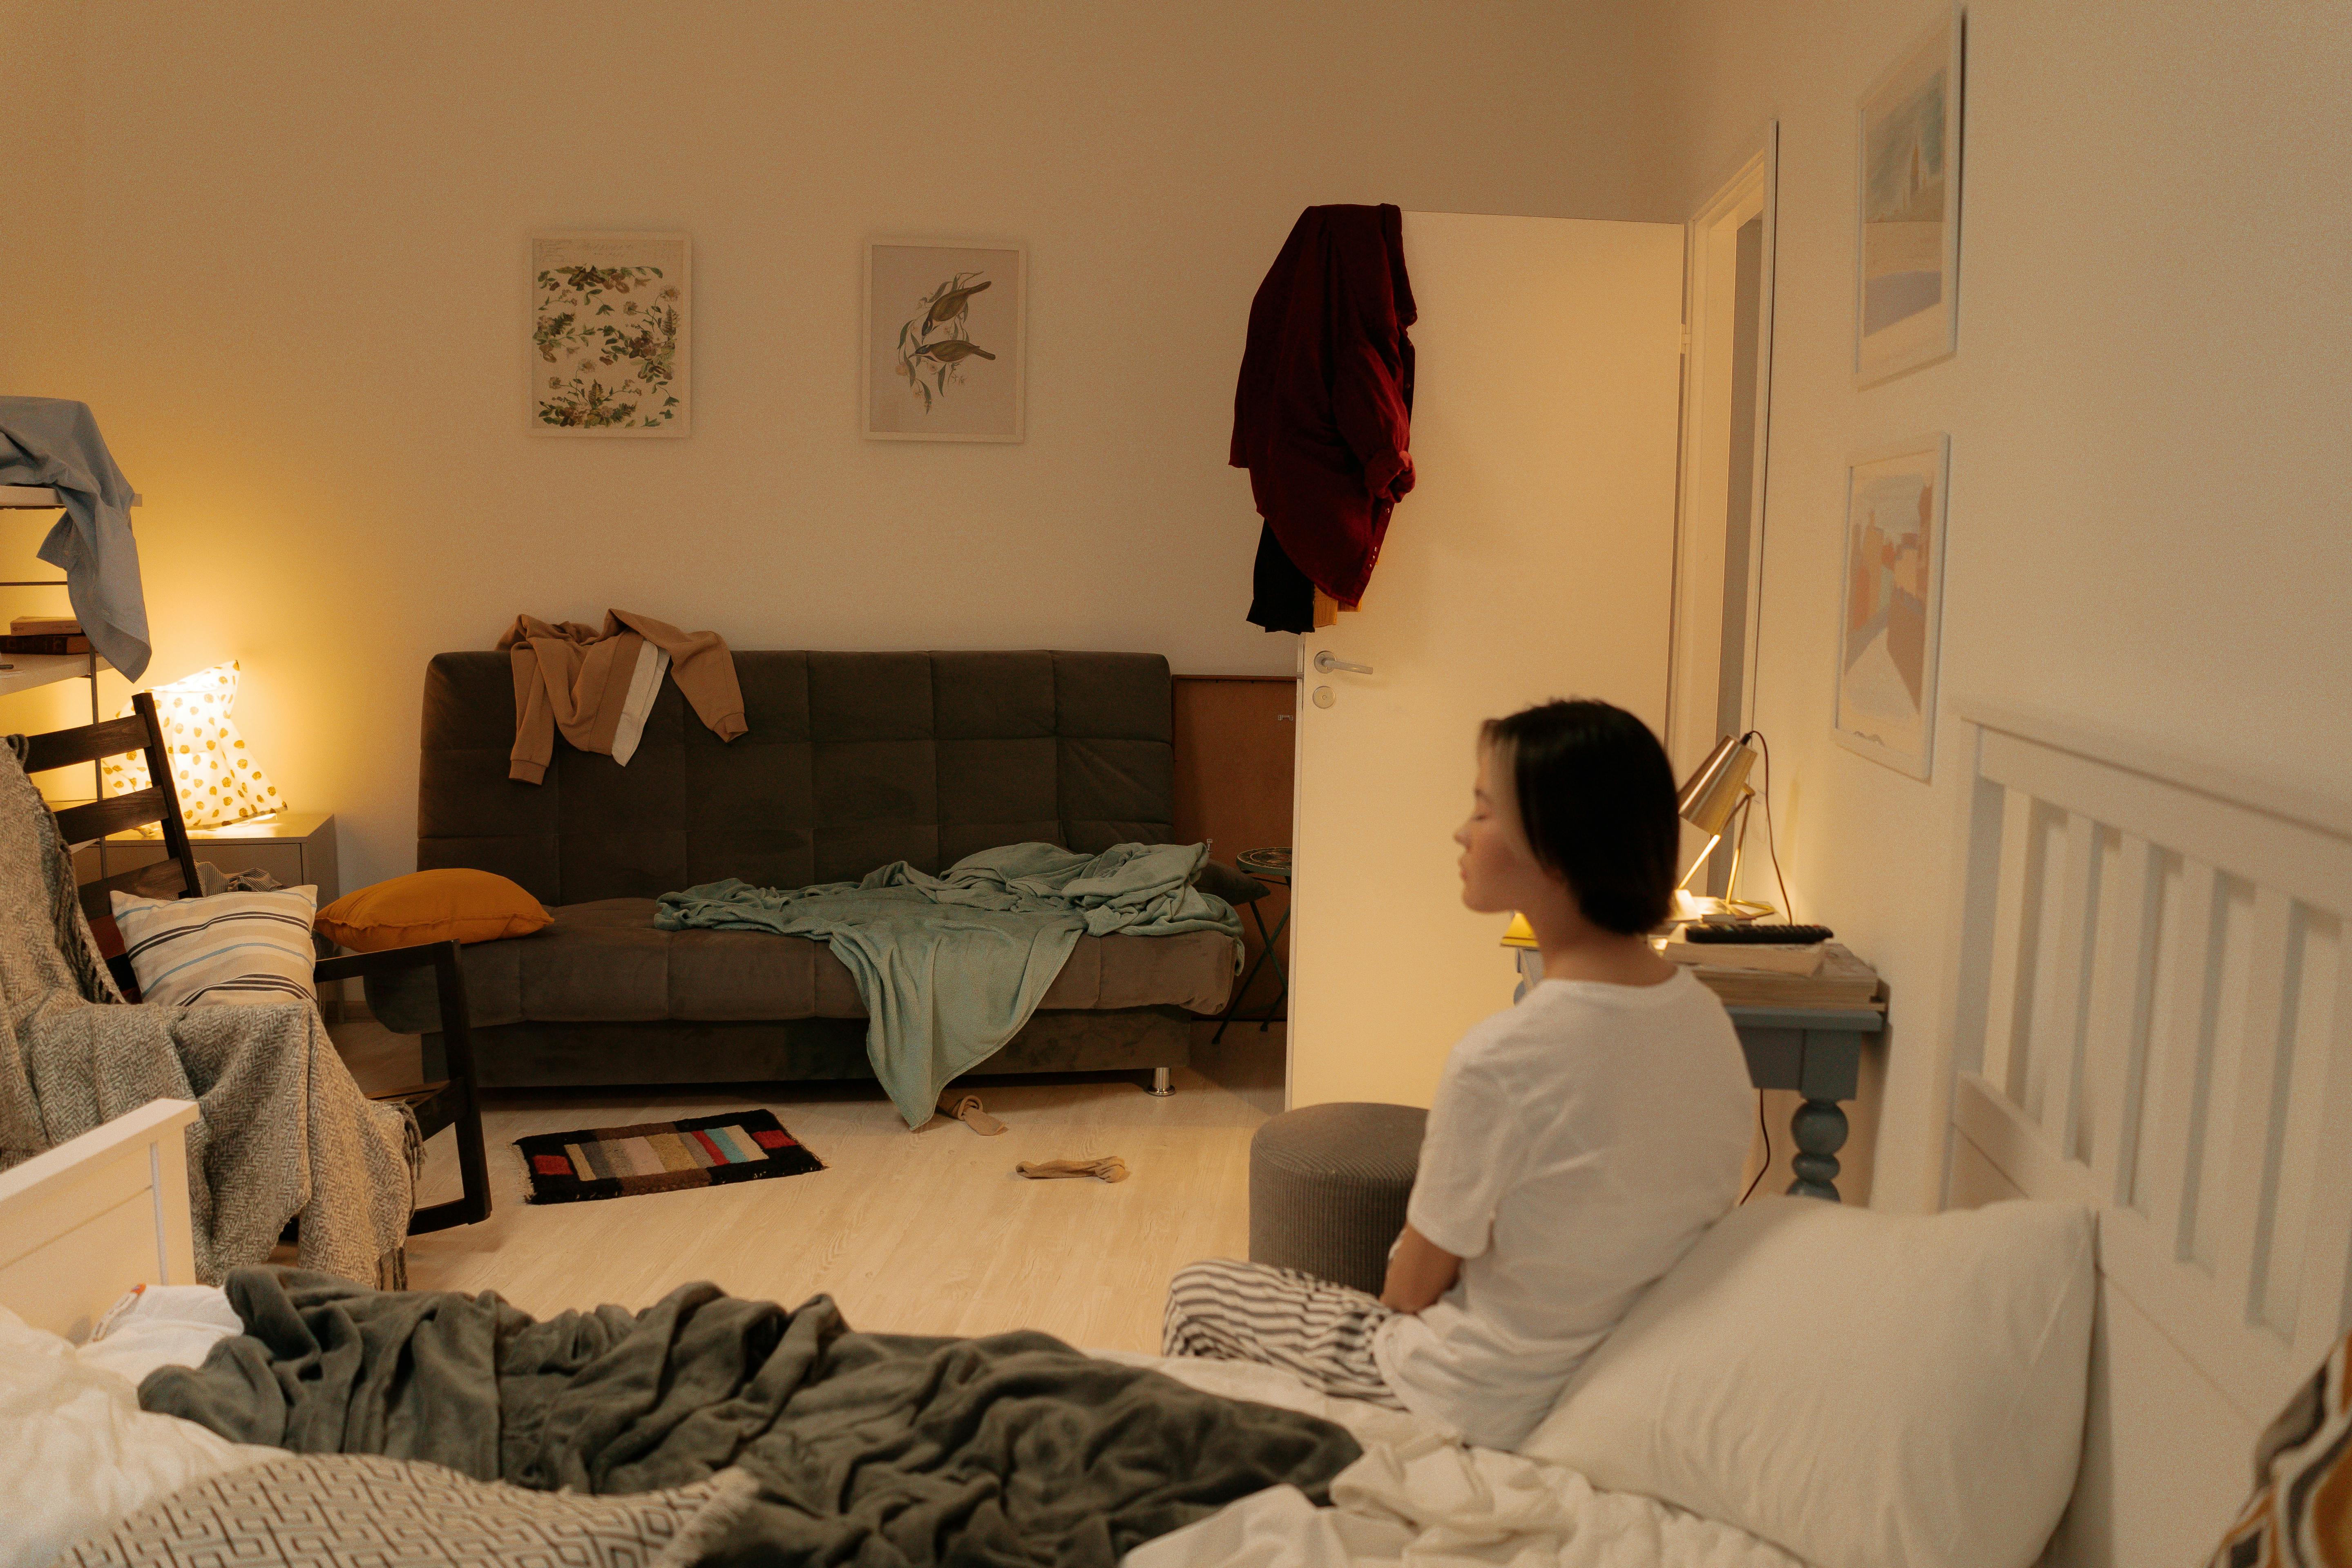 Ein unordentliches Schlafzimmer mit einer Frau, die auf dem Bett sitzt | Quelle: Pexels